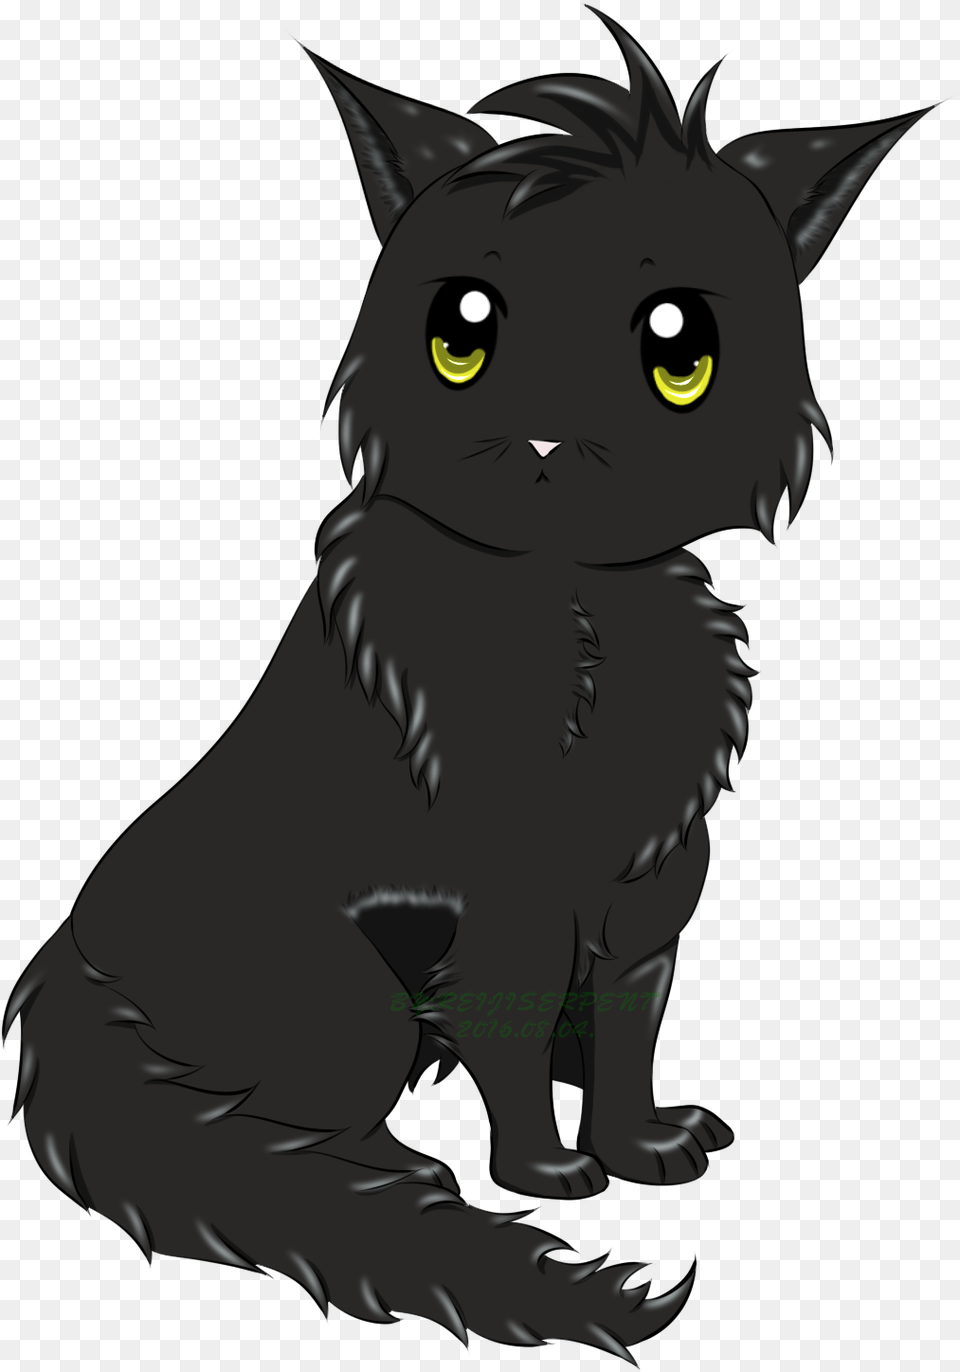 Anime Cat 4 Image Anime Black Cat, Animal, Mammal, Pet, Baby Free Png